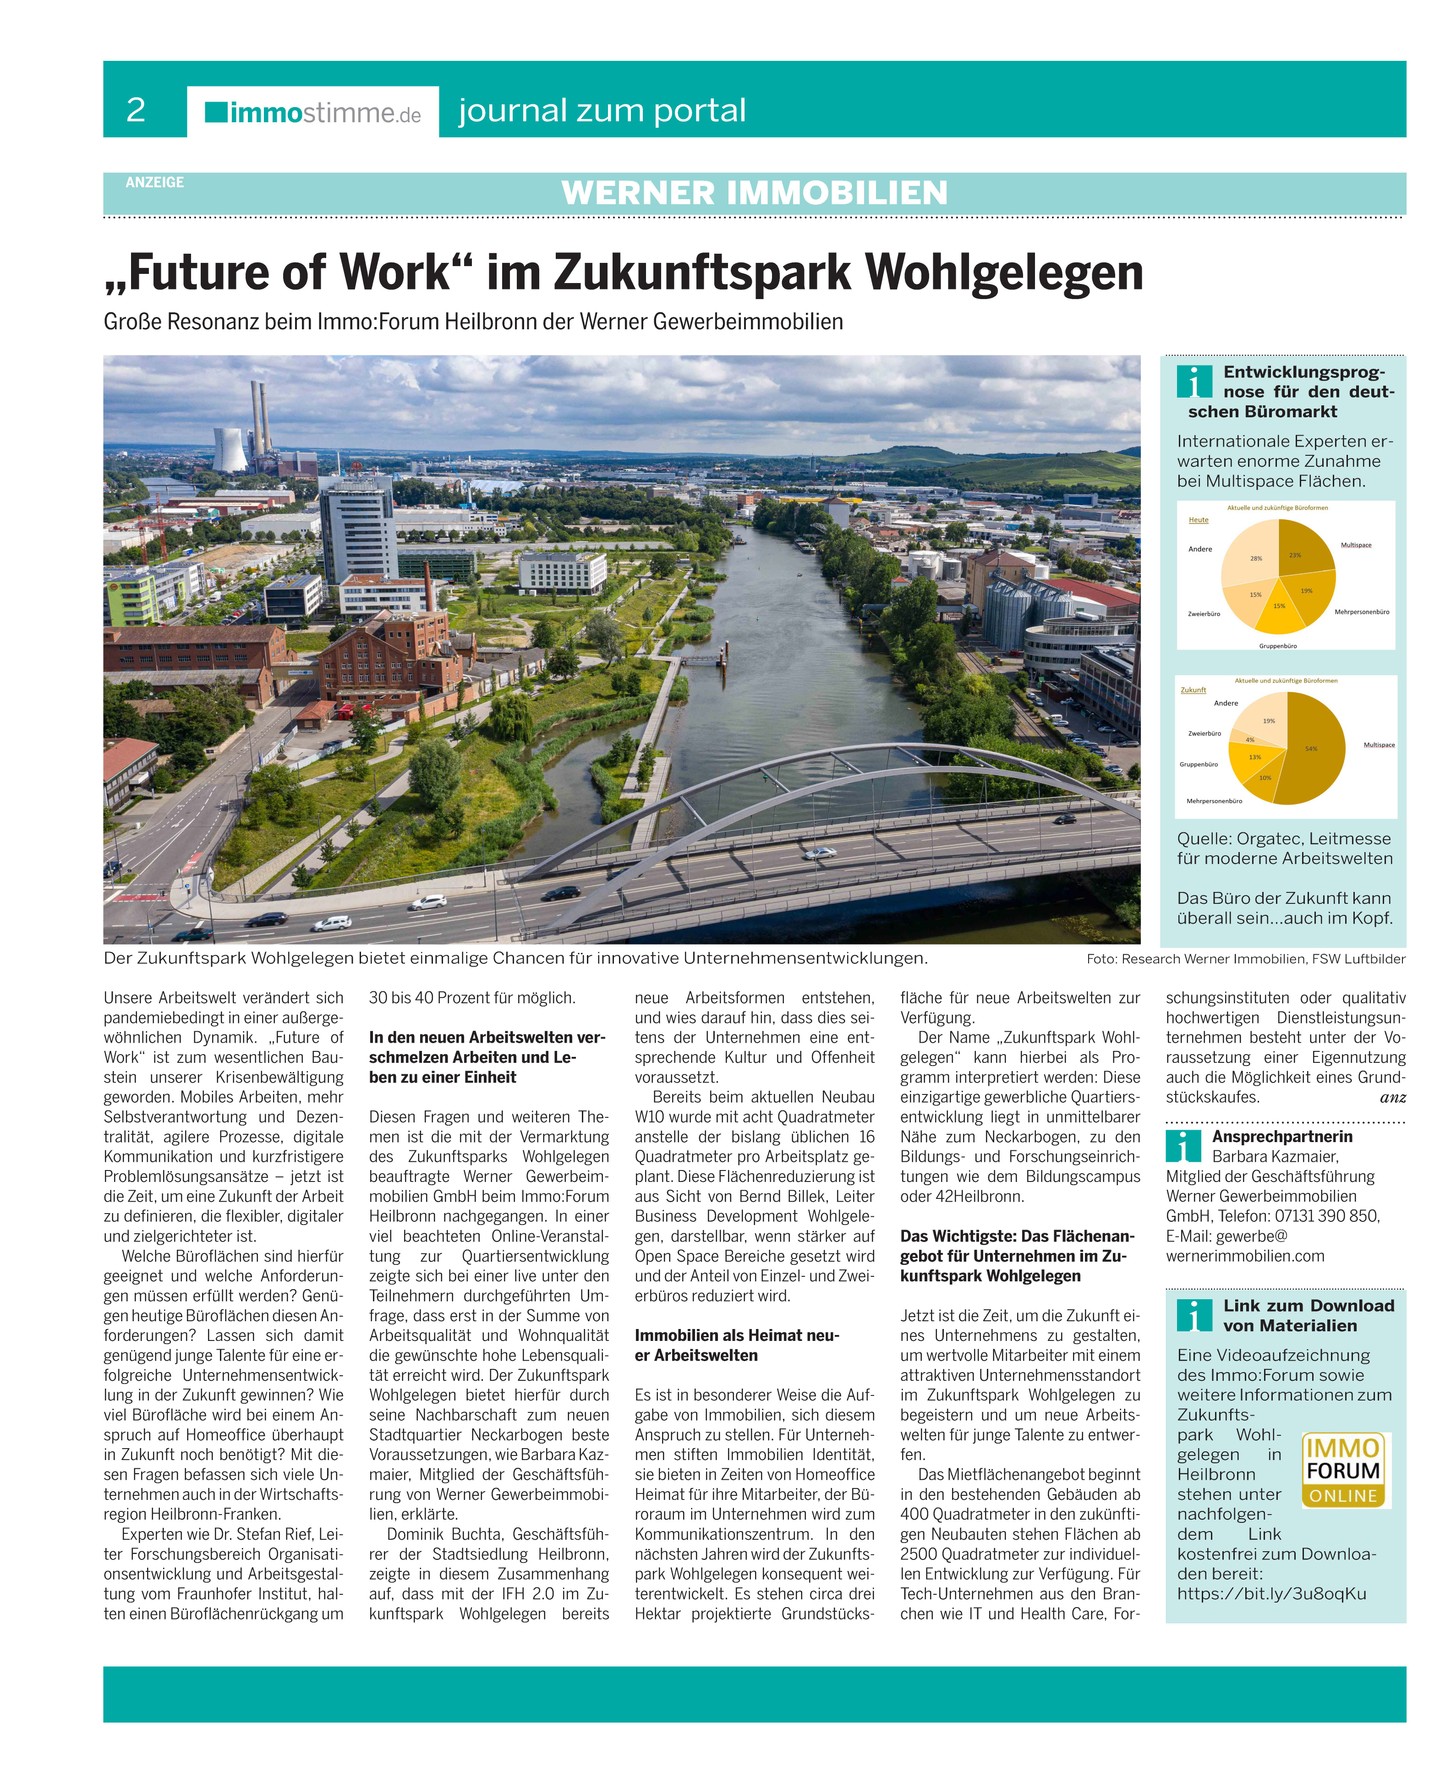 Immobilienmakler Heilbronn_Journal zum Portal_Heilbronner Stimme
				